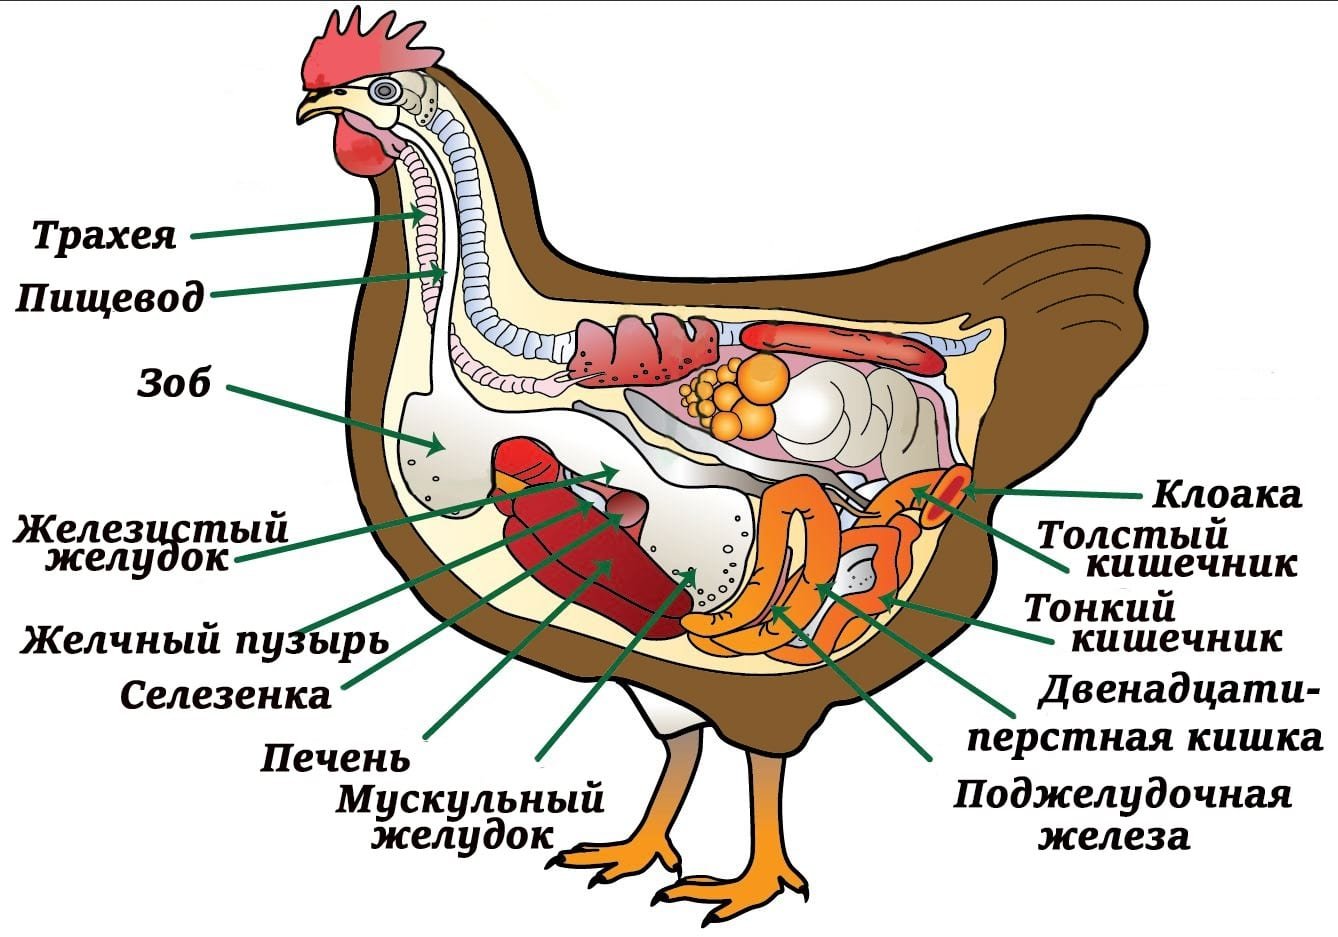 Пищевод зоб. Внутреннее строение курицы. Внутреннее строение птиц пищеварительная система. Анатомия строения курицы. Органы пищеварительной системы у птиц зоб.